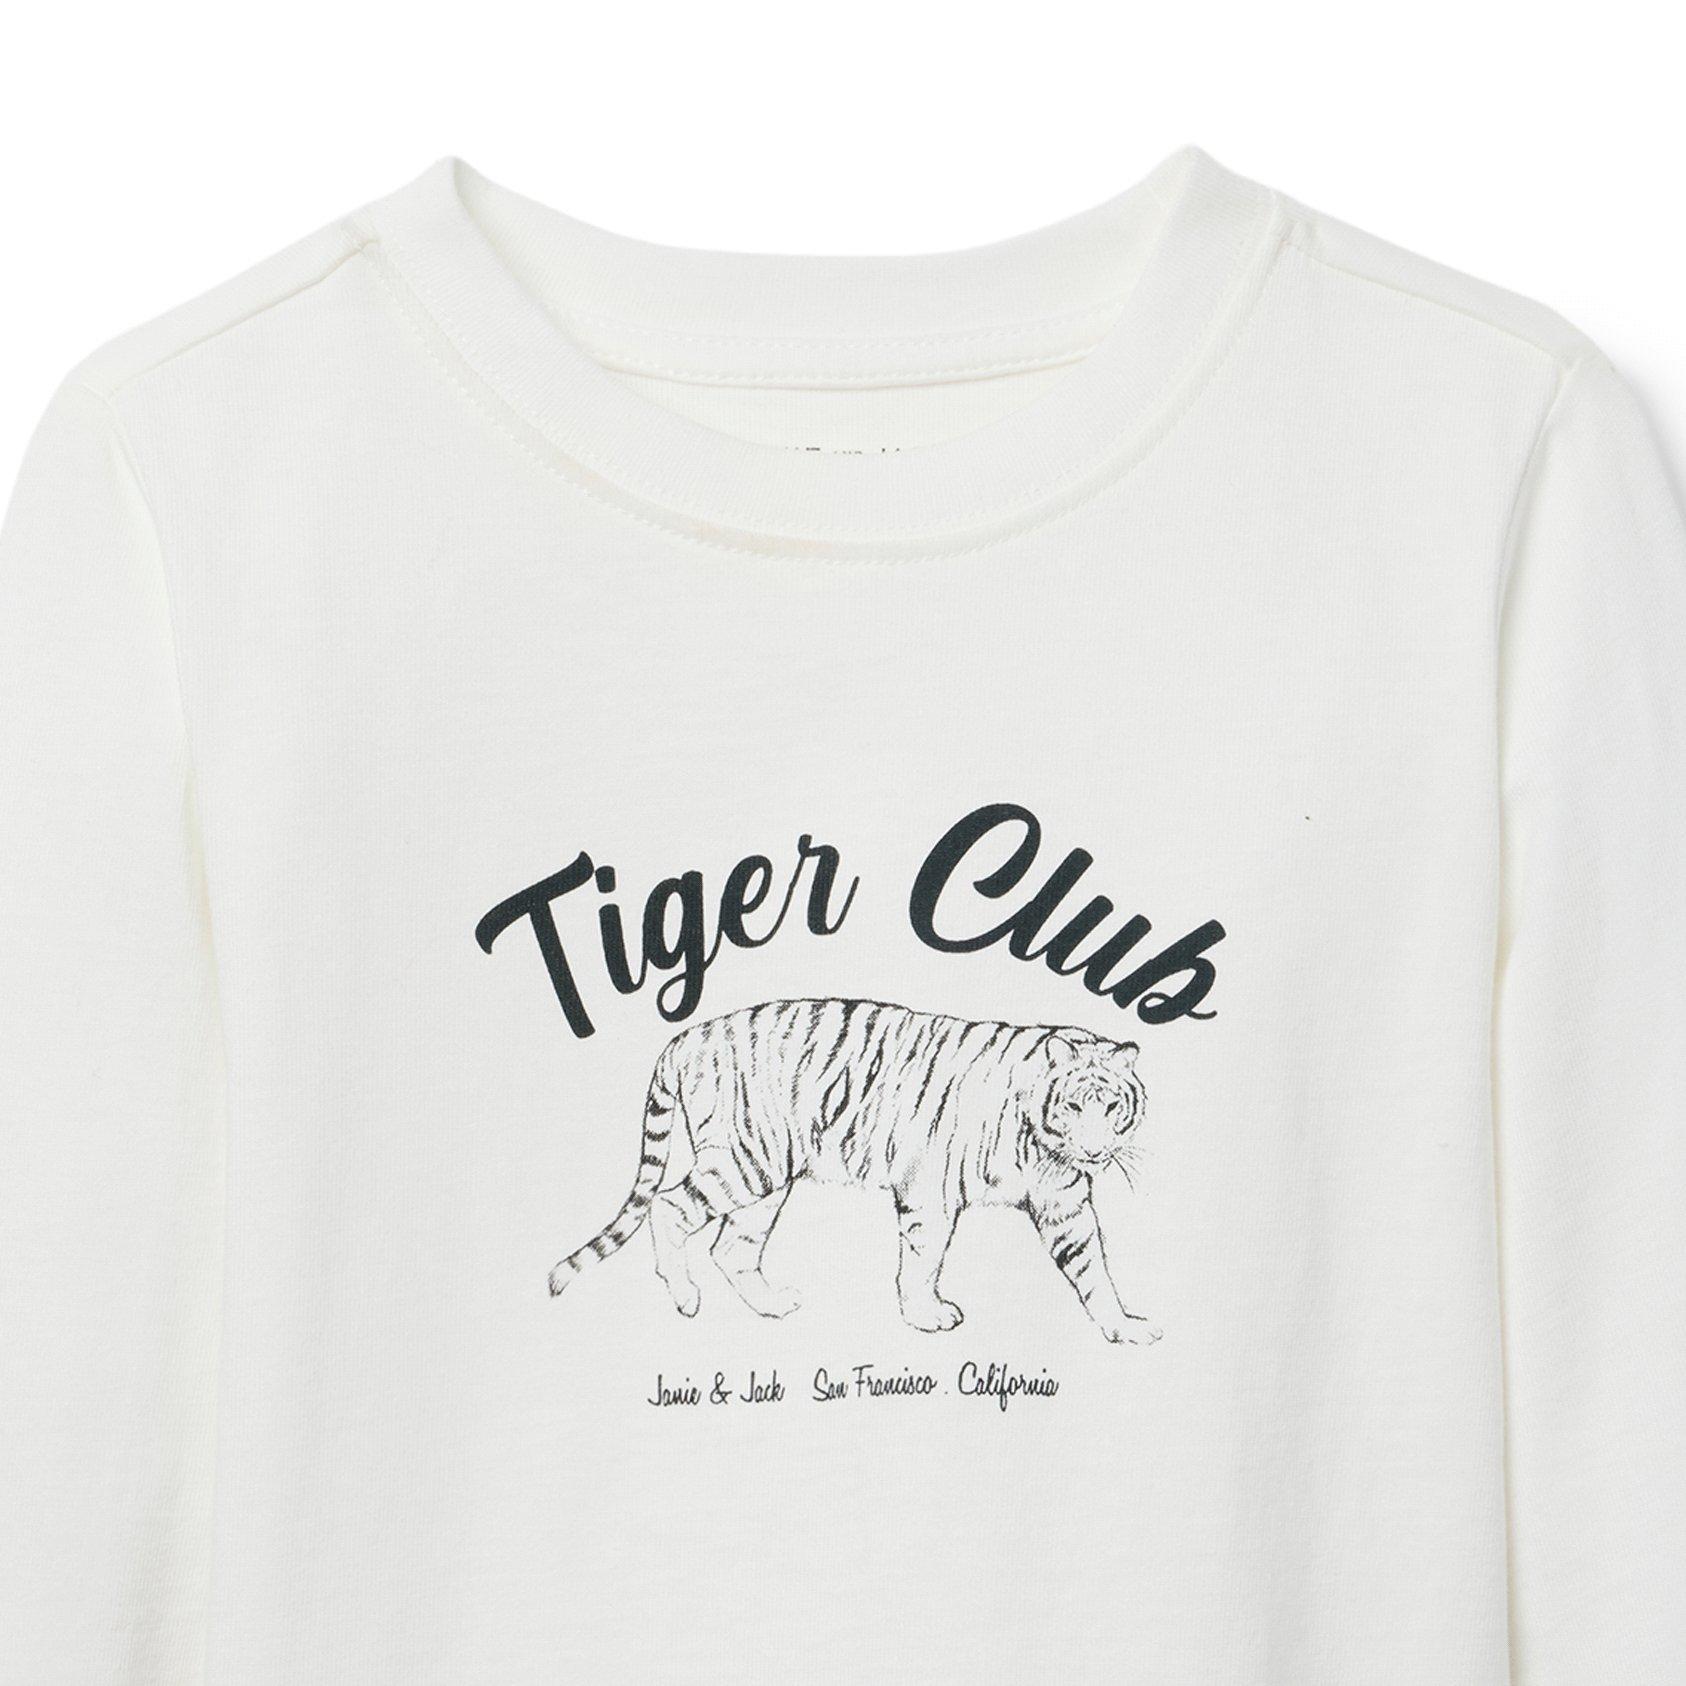 Tiger Club Tee image number 1